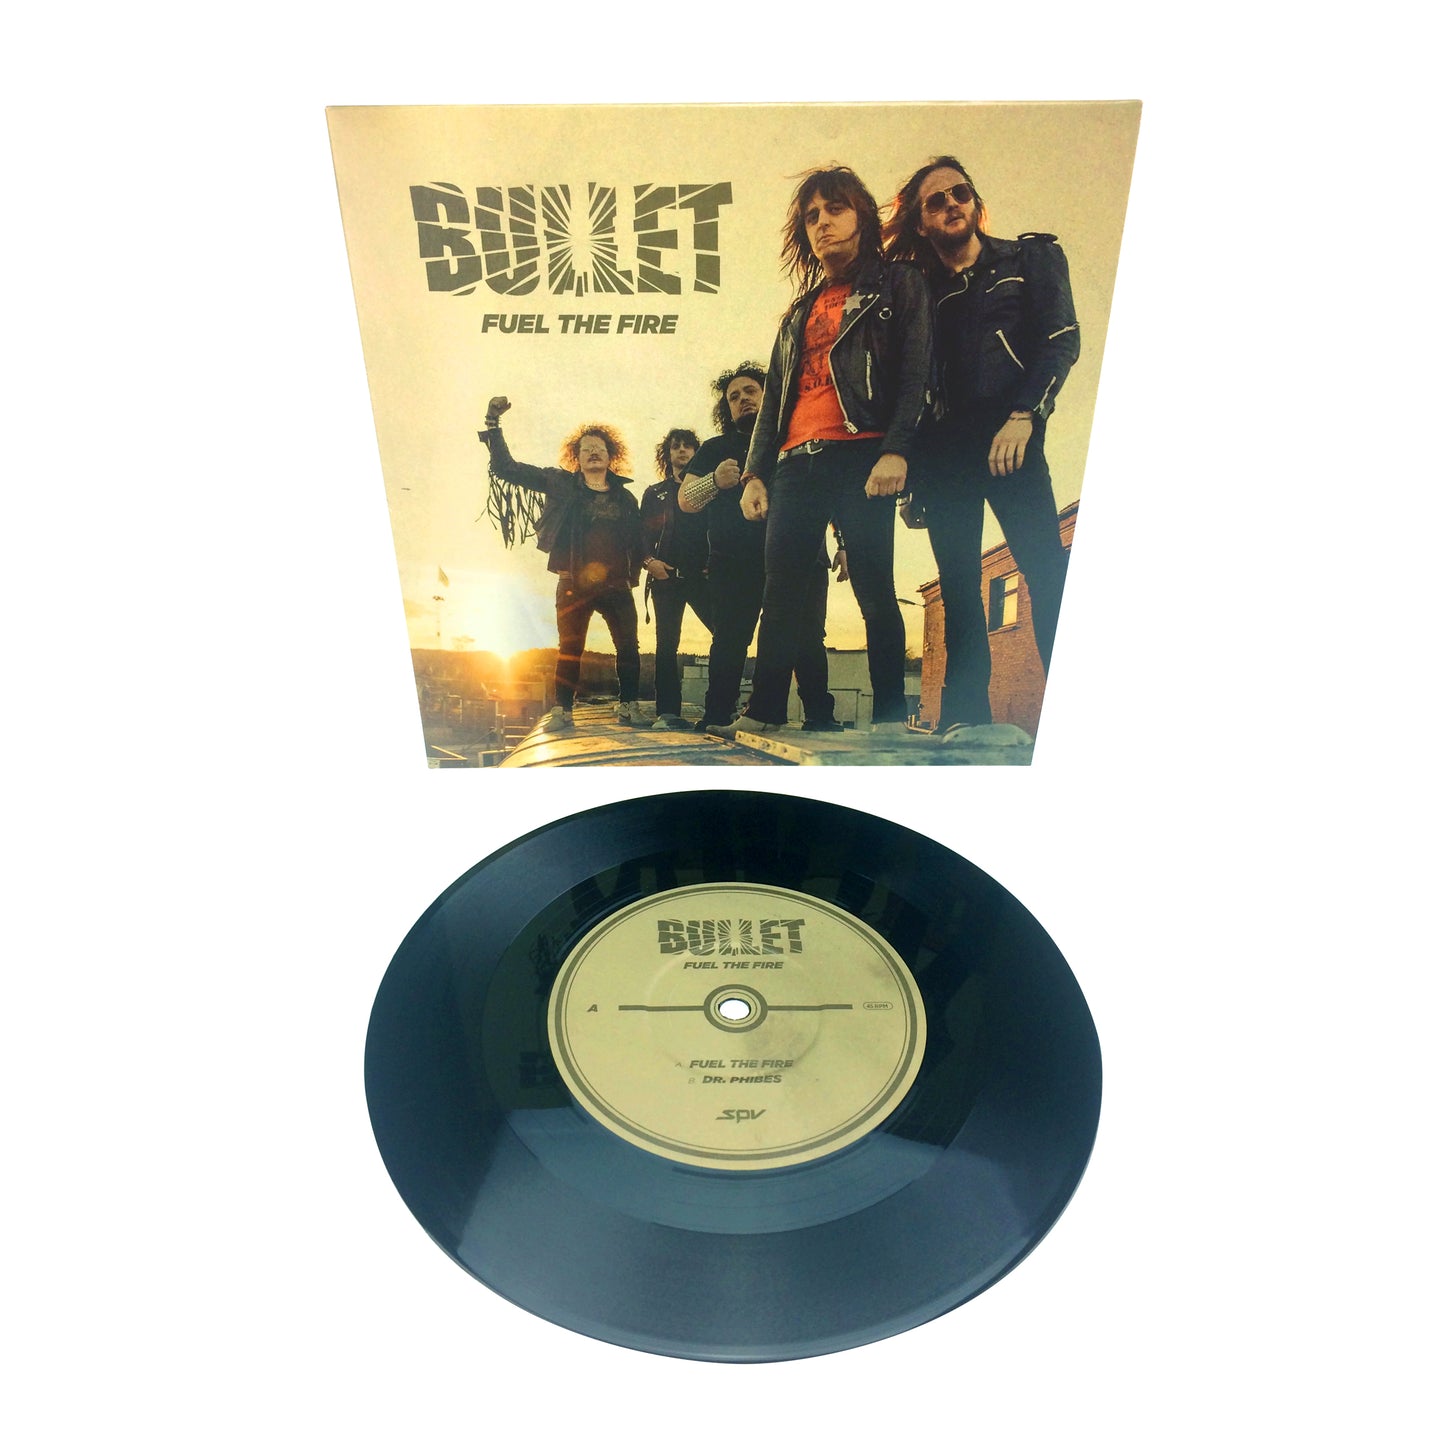 Bullet "Fuel The Fire" LP (Single)